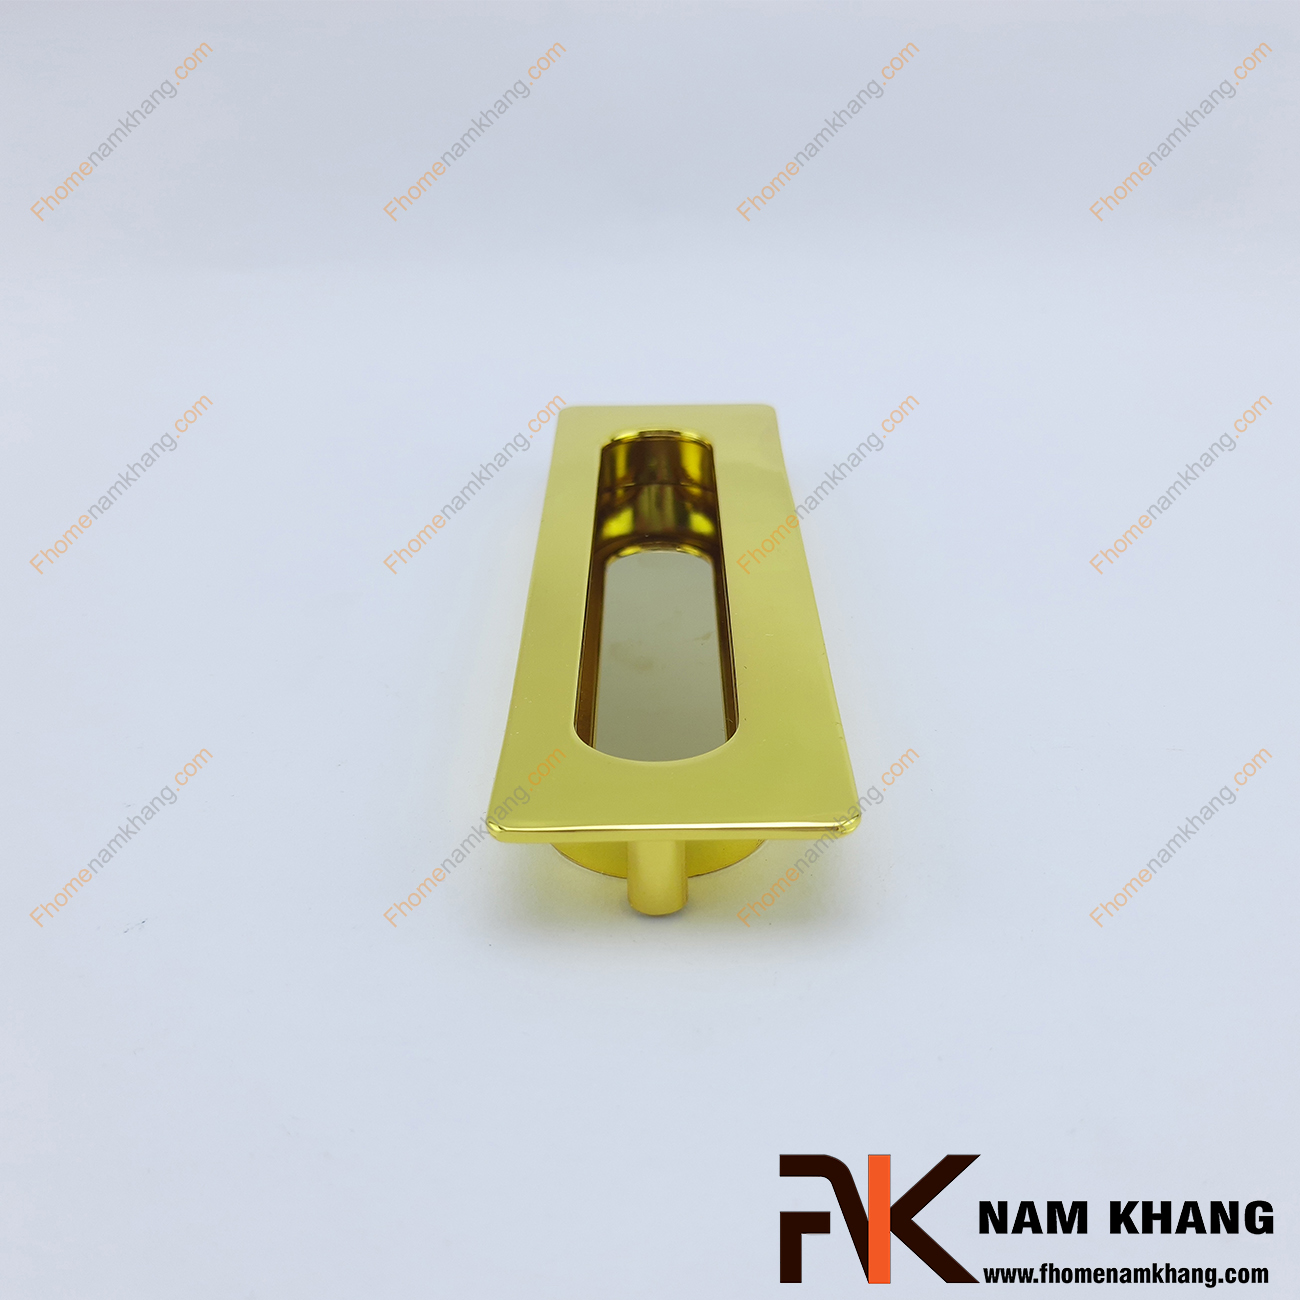 Tay nắm âm tủ dạng trơn màu vàng bóng NK145-V là loại tay nắm chuyên dùng cho các loại tủ đặt ở những nơi có không gian hạn chế hoặc dùng để nâng cao tính thẫm mỹ của sản phẩm.